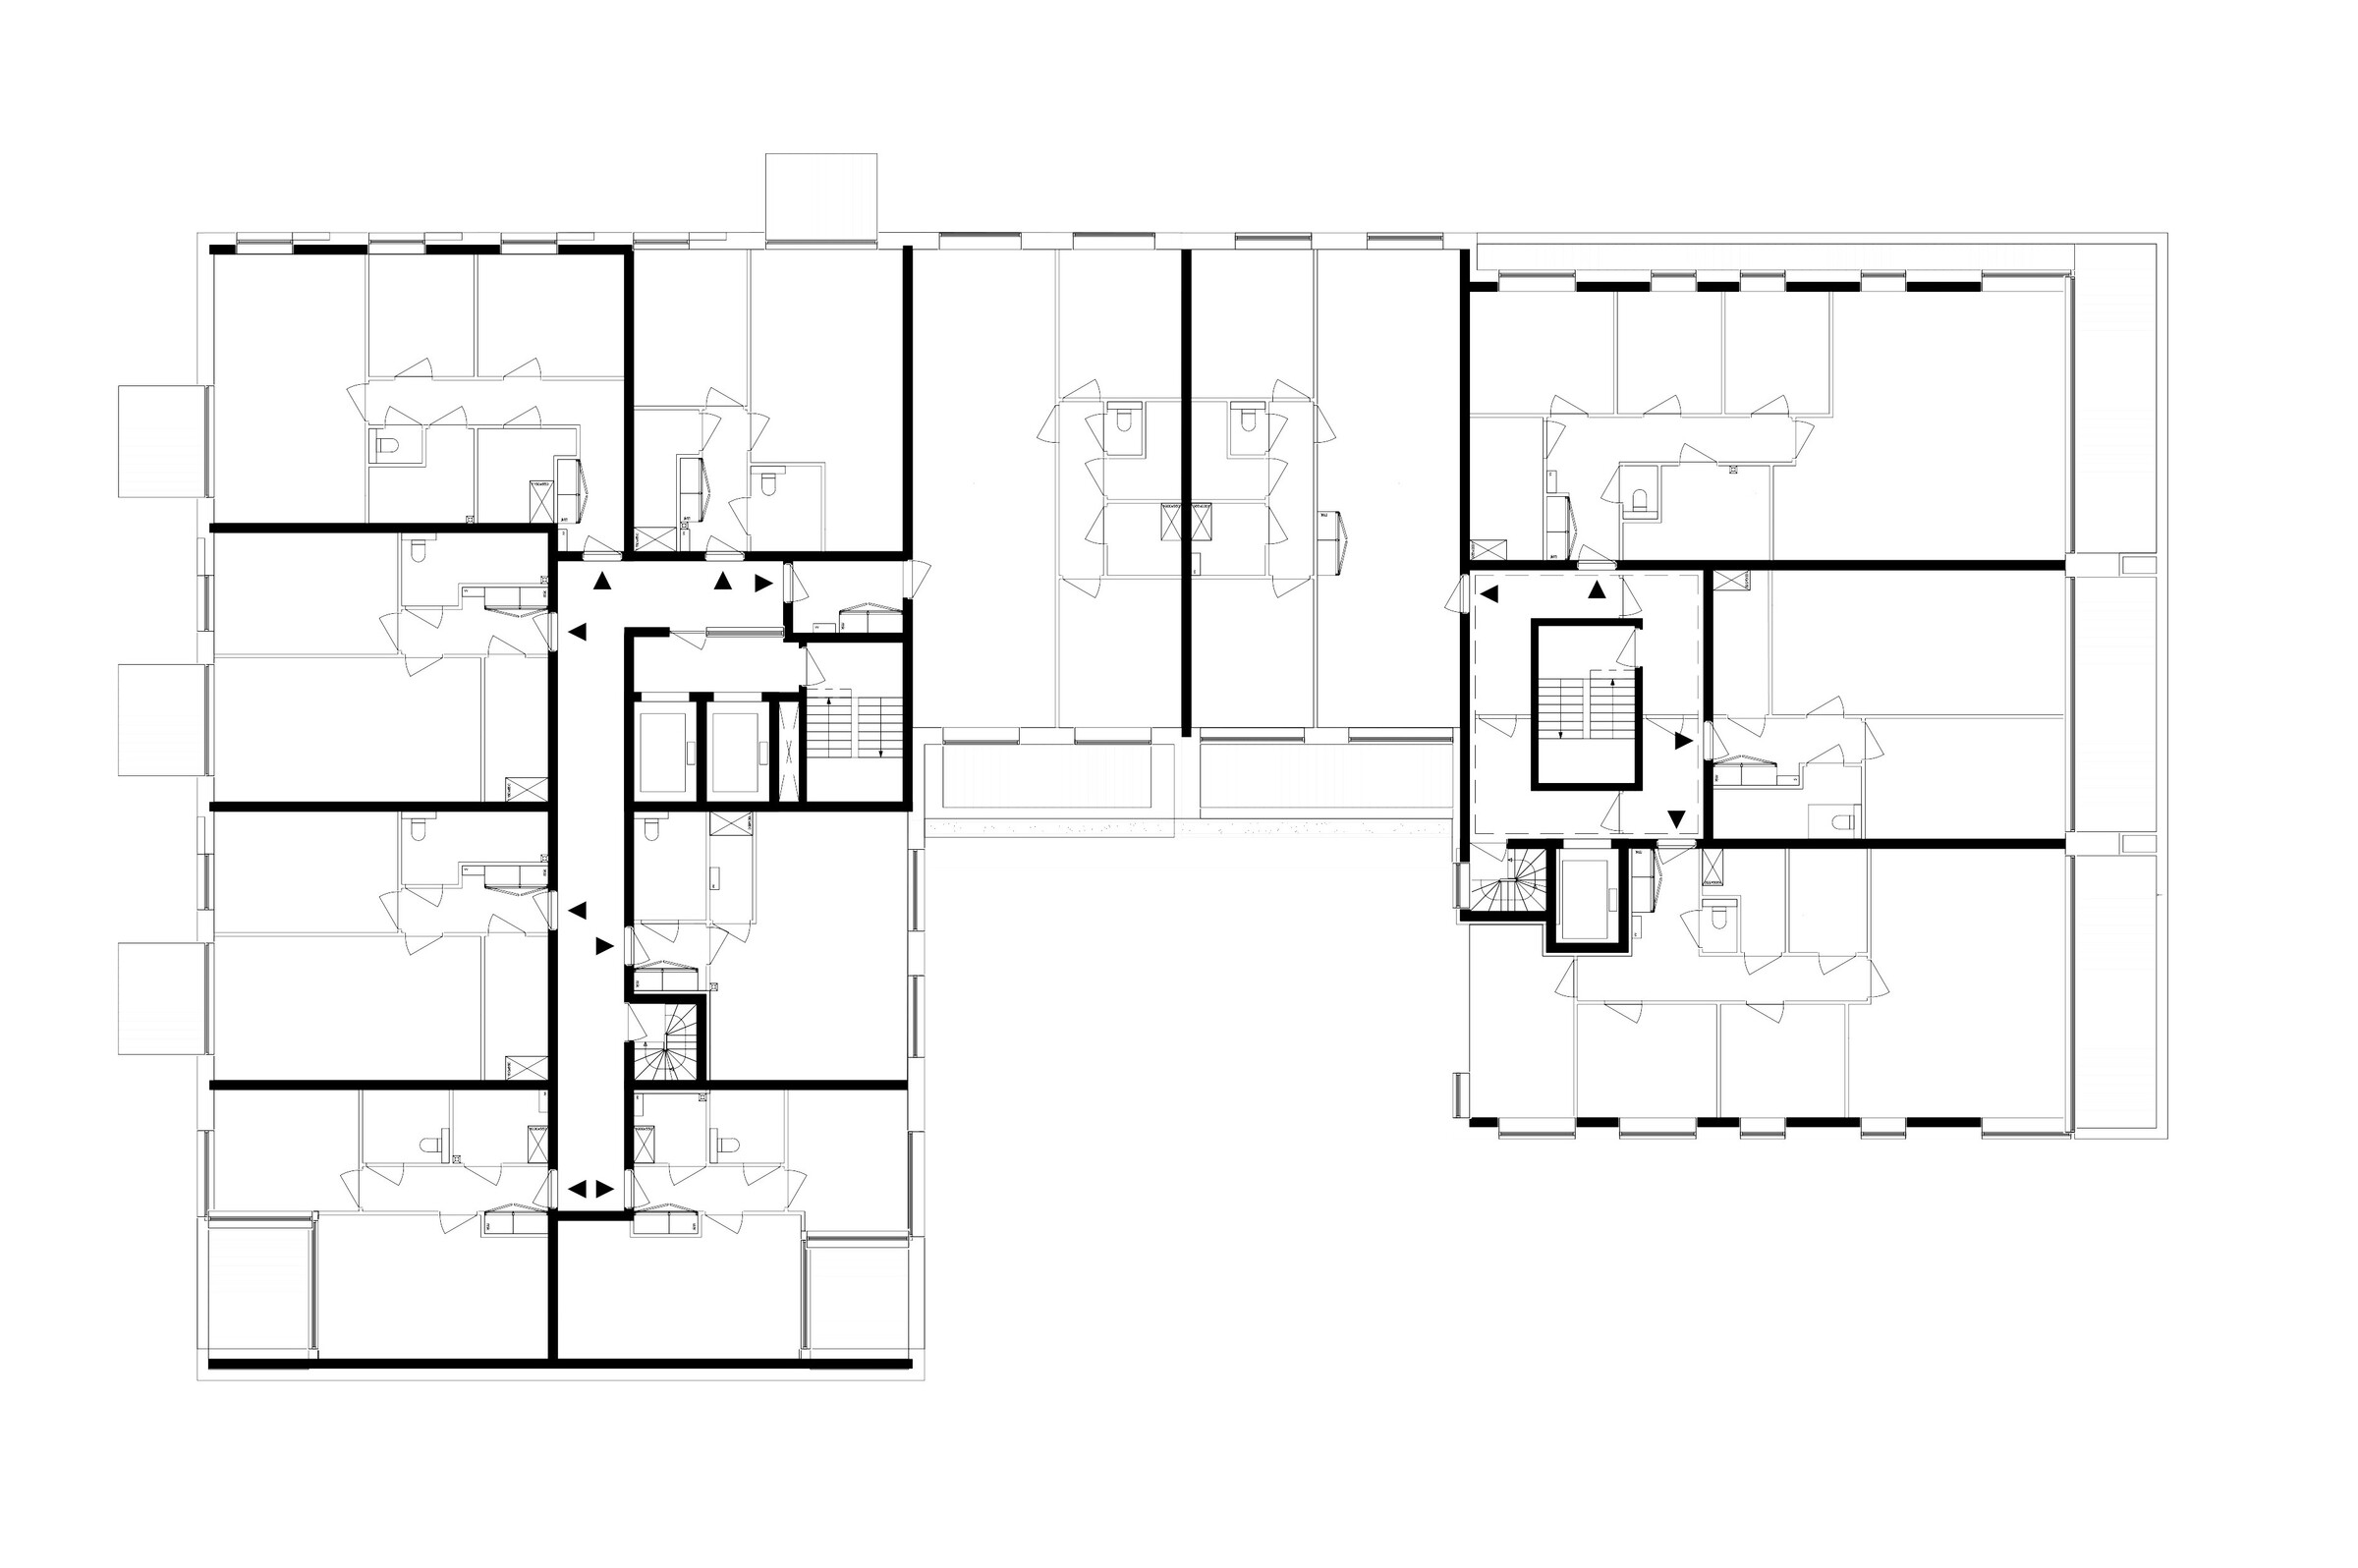 Zecc-Merwede-Kanaalzone-Housing-floor.jpg